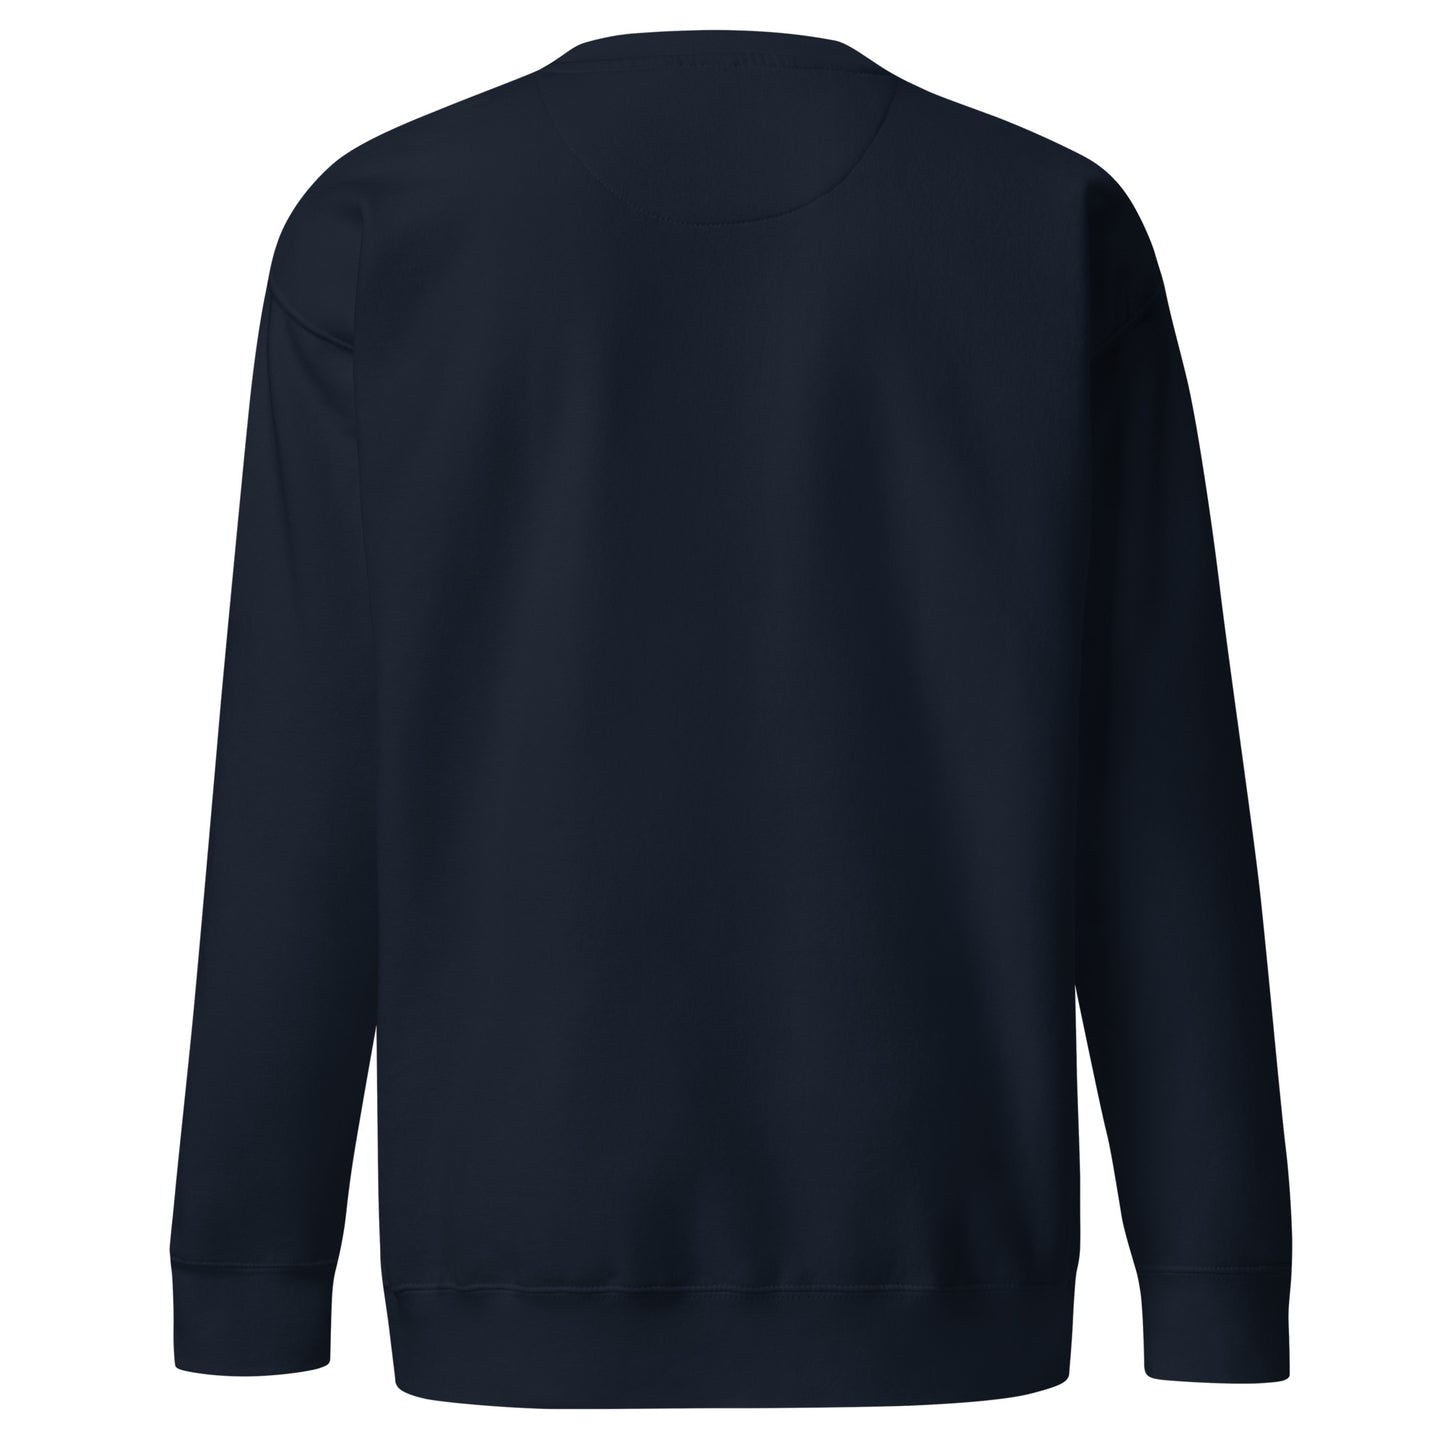 BE PATIENT Sweatshirt (Navy Blue)